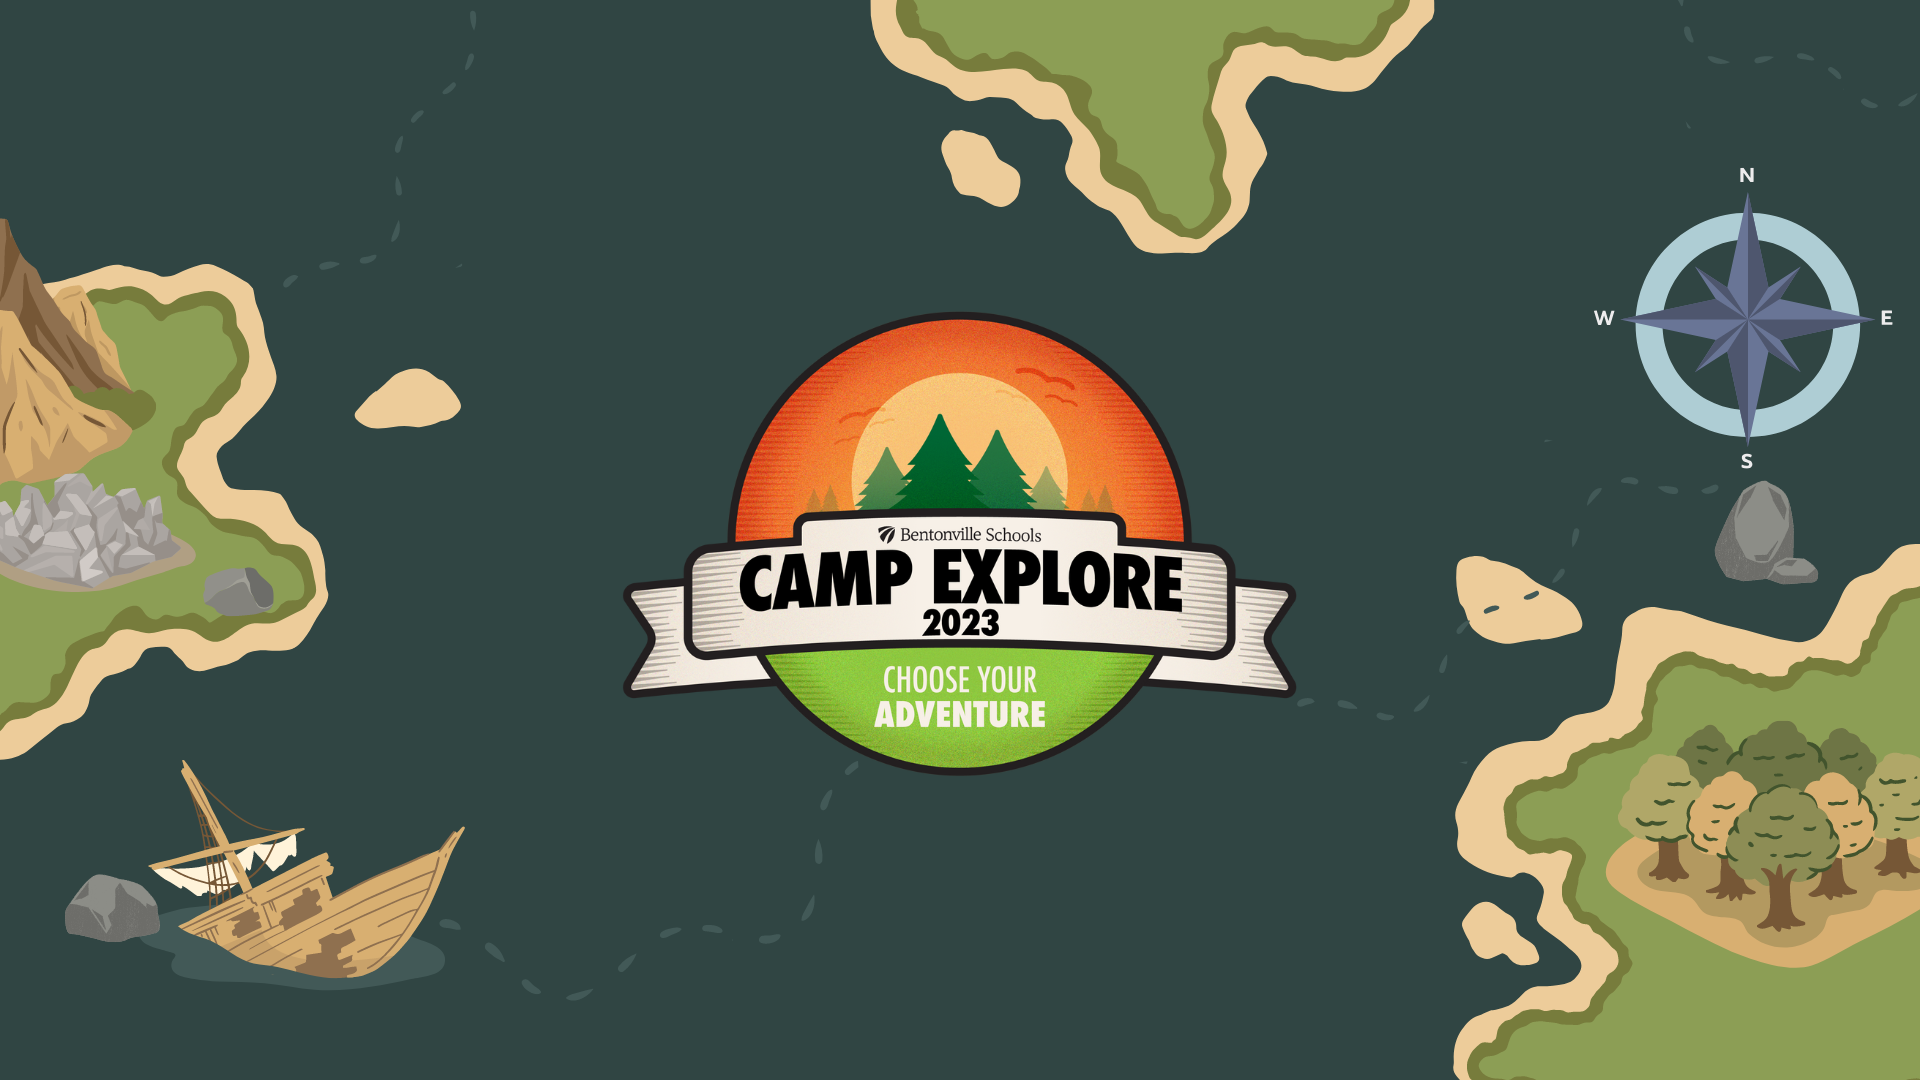 Camp Explore